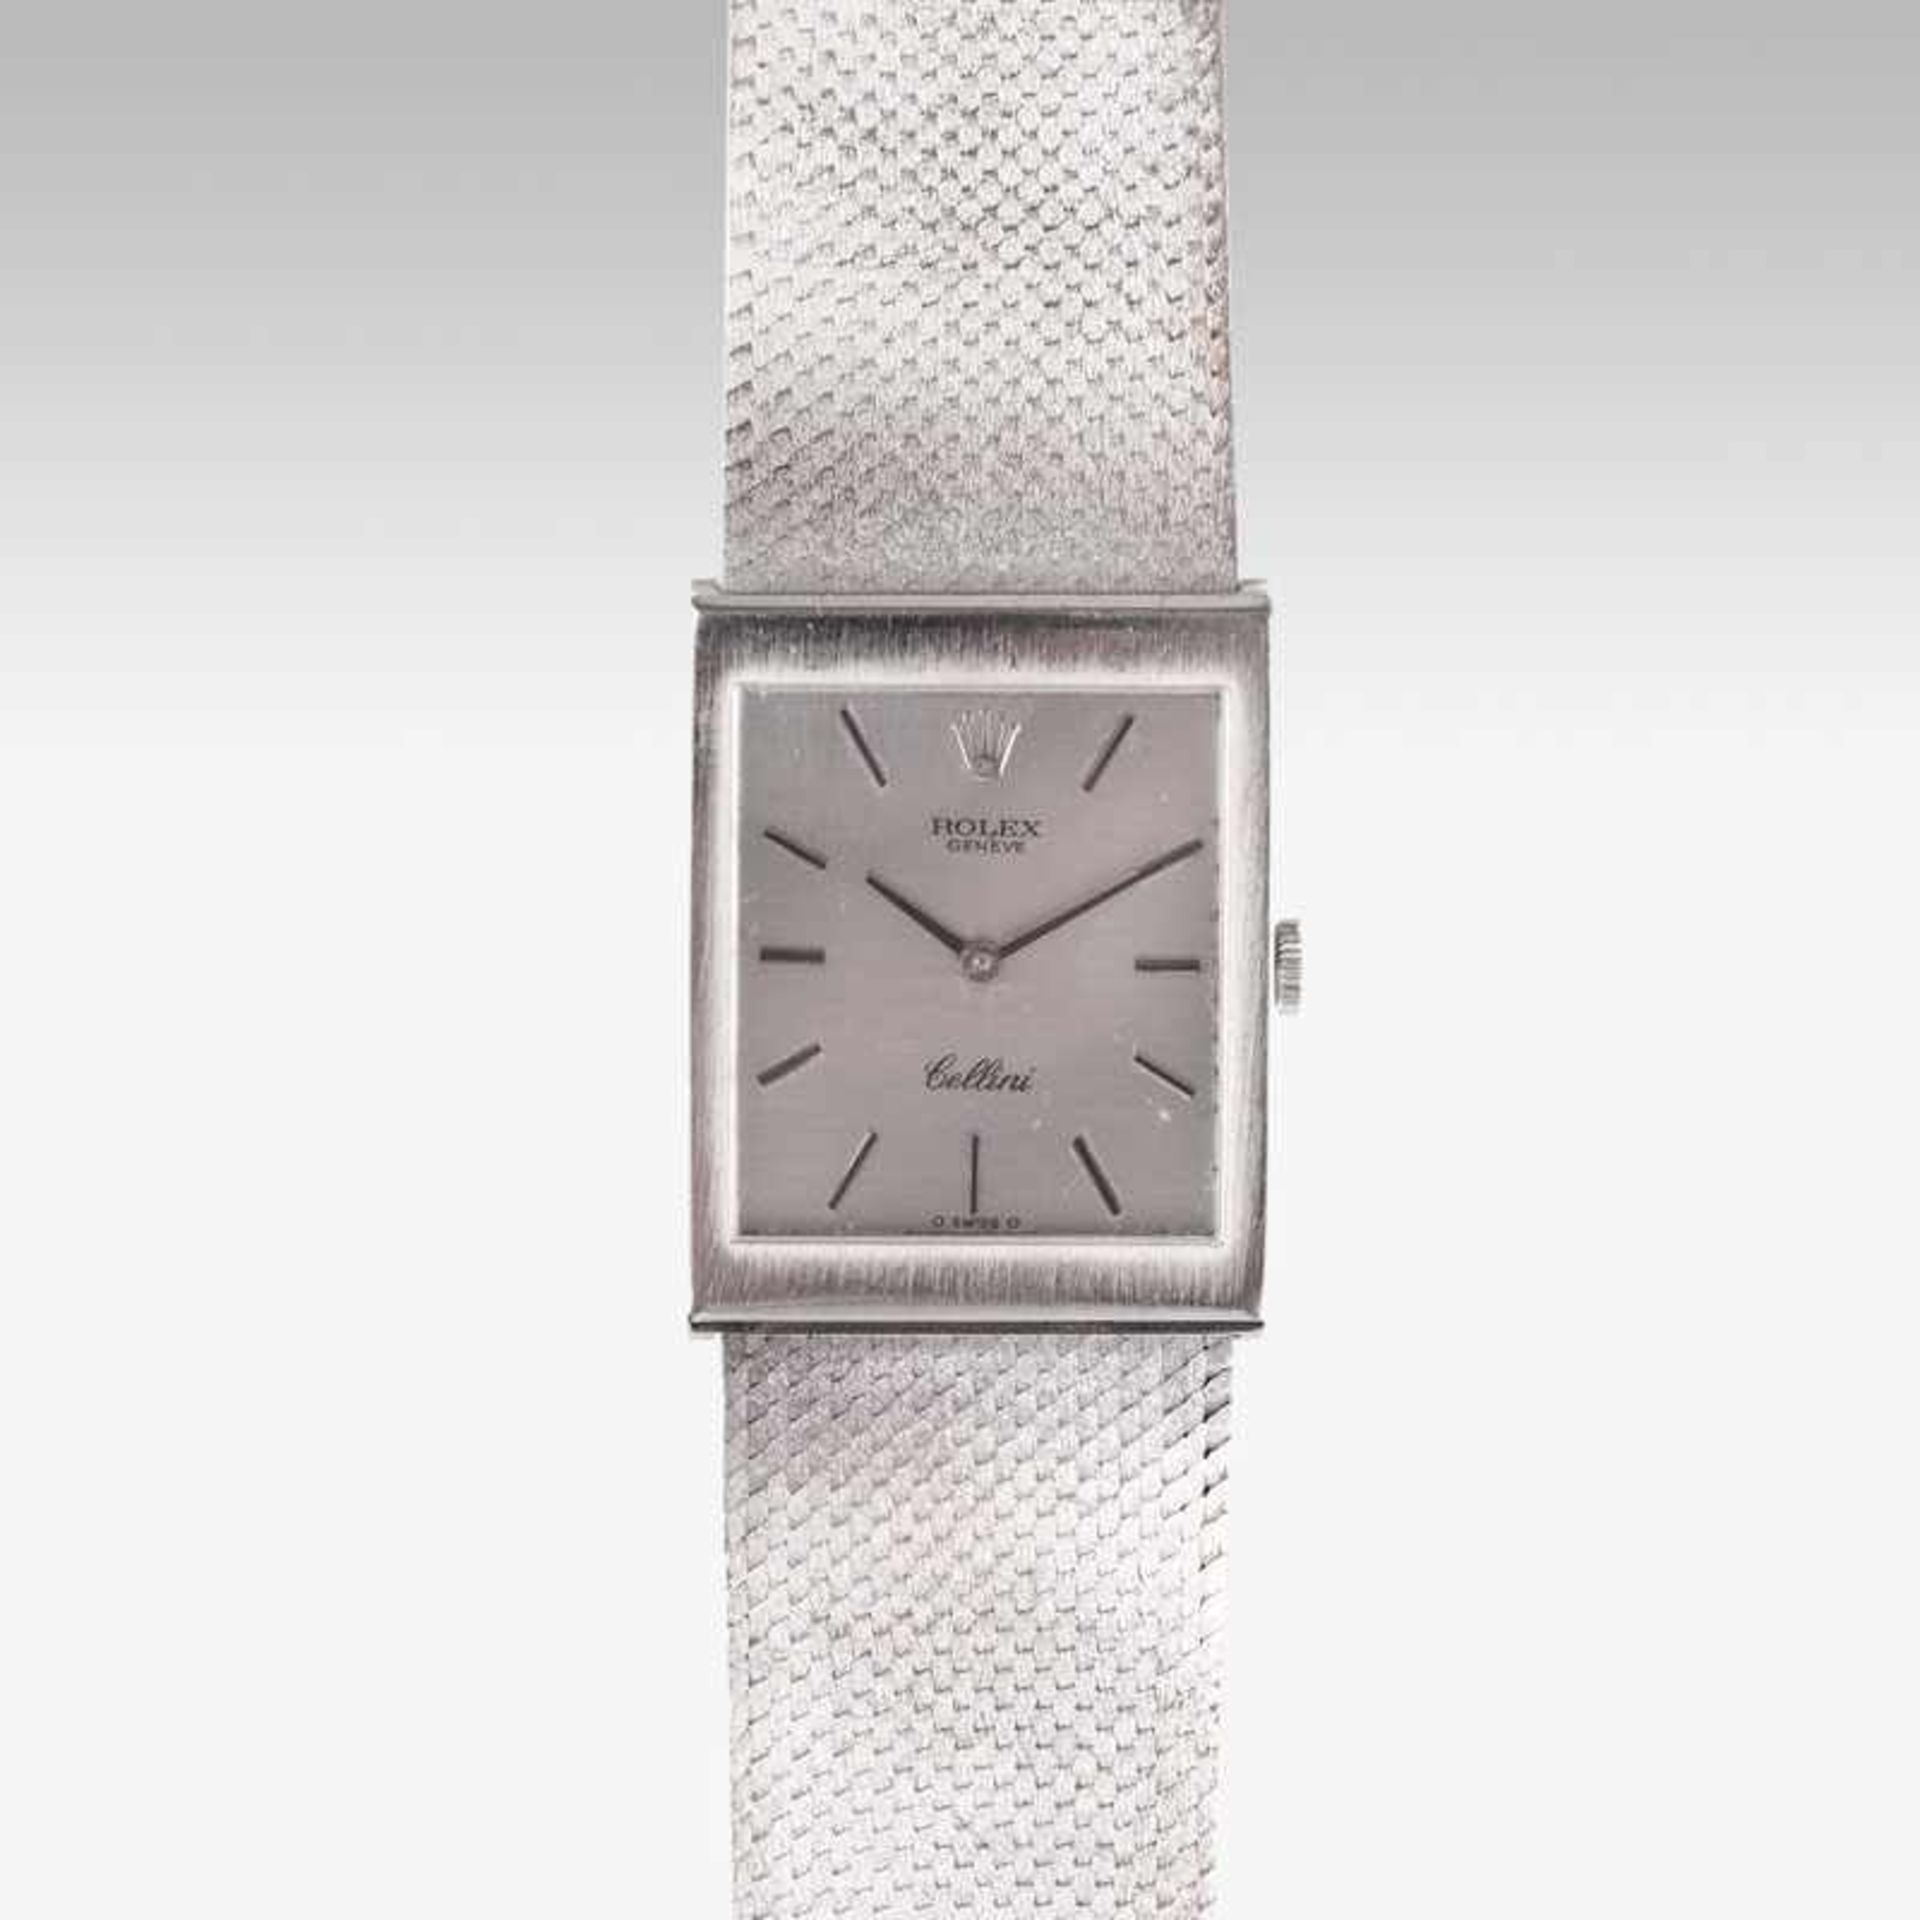 Rolex reg. 1908 Vintage Herren-Armbanduhr 'Cellini' Um 1970. 18 kt. WG, gest. Handaufzug. Mattiertes